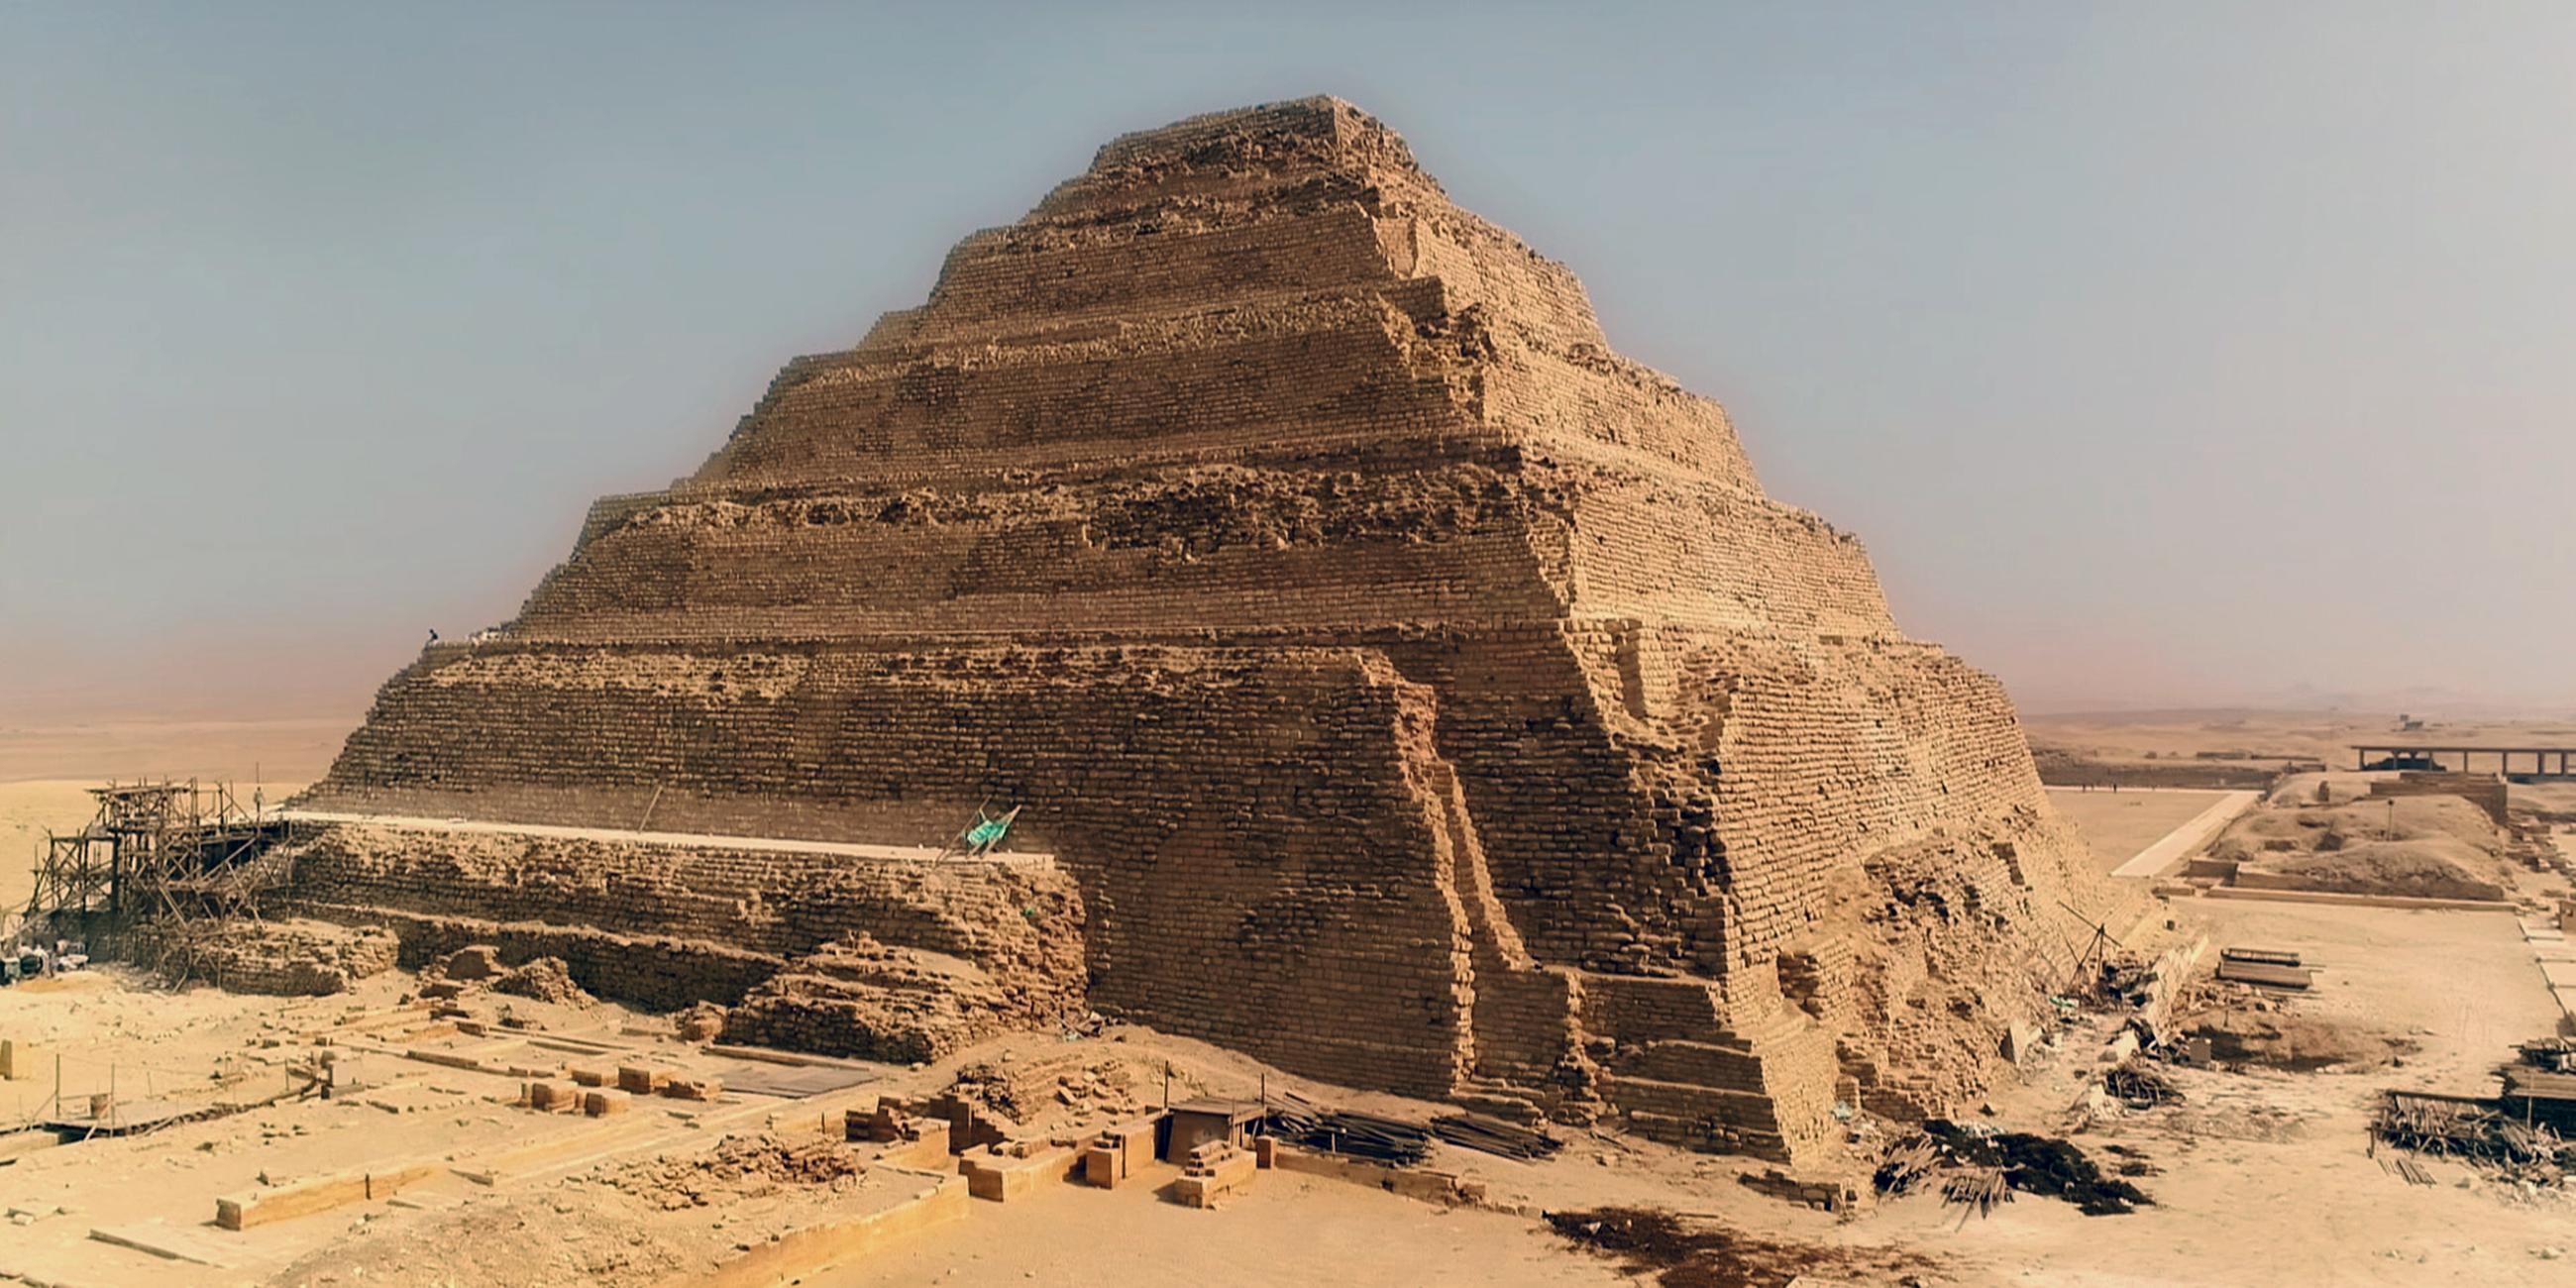 Totale der Djoser-Pyramide mit ihren Steinstufen. Die Verkleidung ist teilweise zerstört. Im Hintergrund erheben sich mehrere kleinere Bauten und Strukturen.